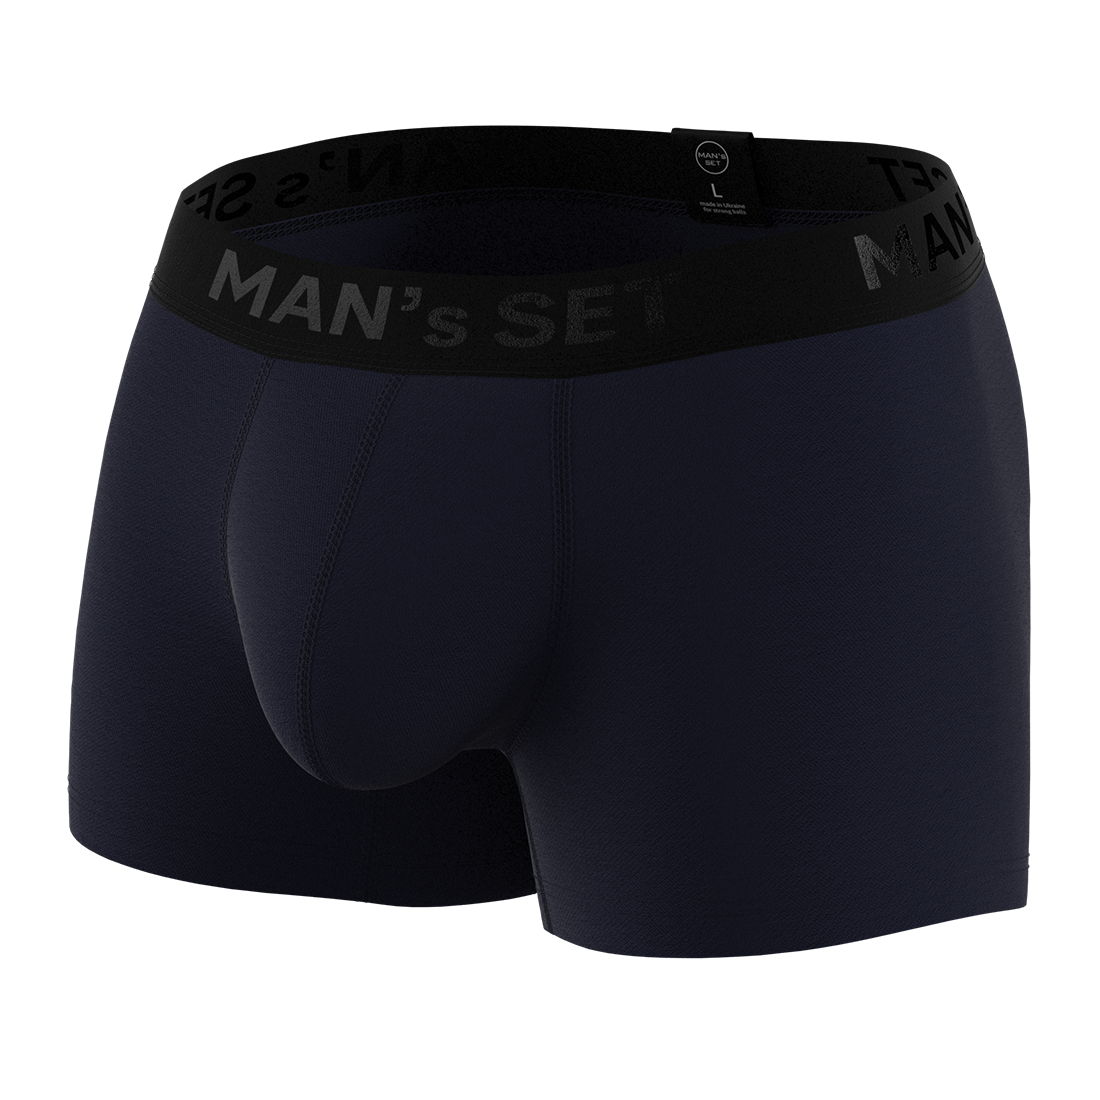 Мужские анатомические боксеры, Intimate 2.0 Black Series, темно-синий MansSet - Фото 2